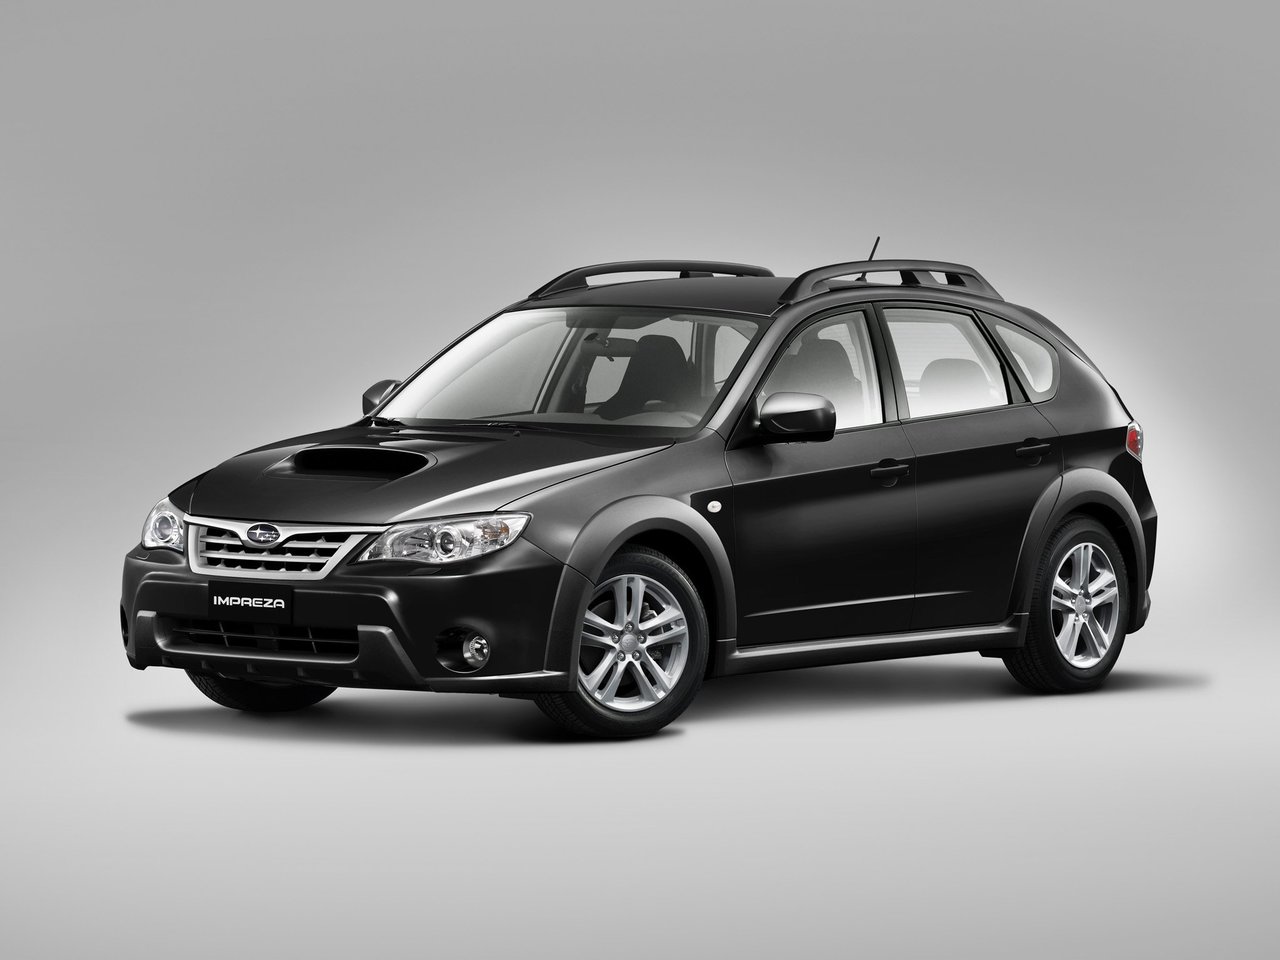 Расход газа двух комплектаций хэтчбек пять дверей XV Subaru Impreza. Разница стоимости заправки газом и бензином. Автономный пробег до и после установки ГБО.